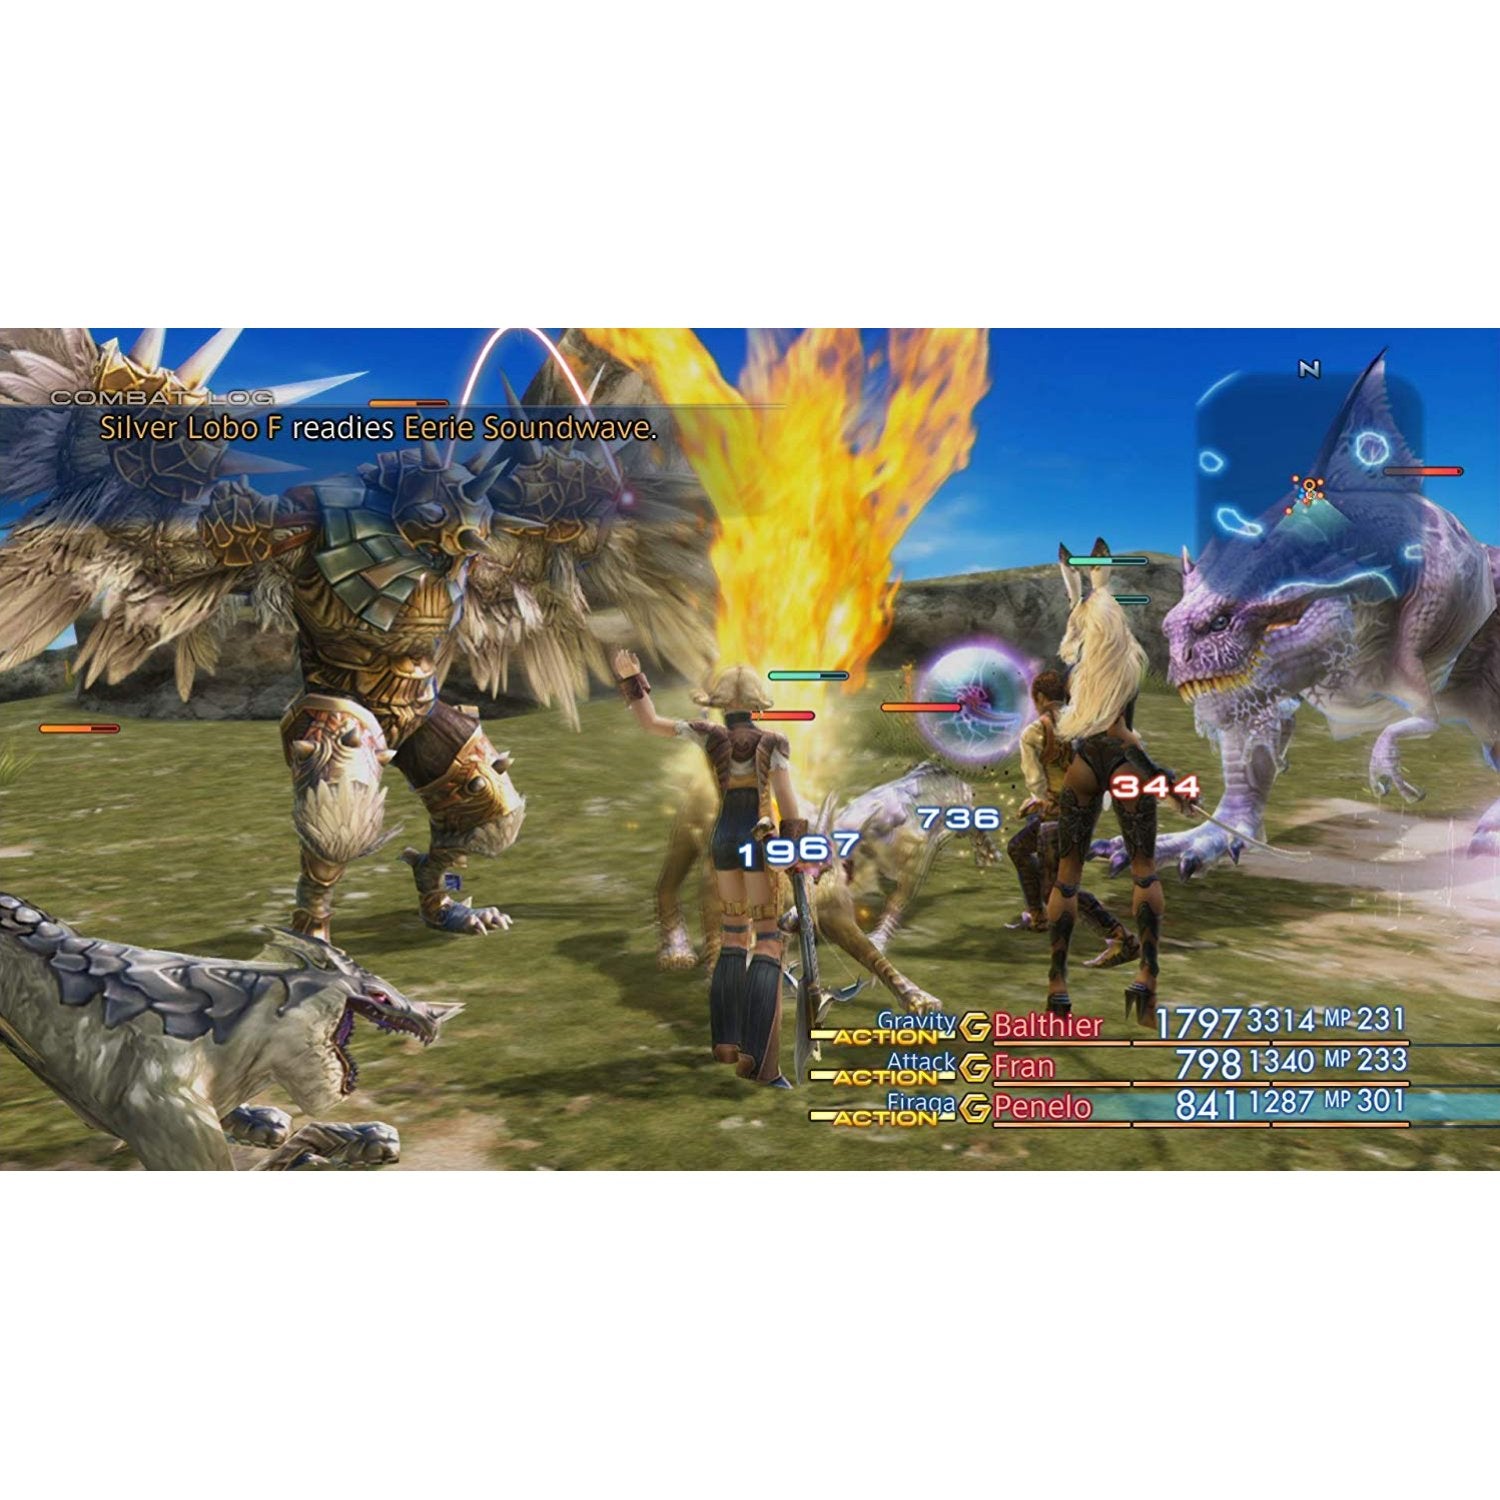 NSW Final Fantasy XII: The Zodiac Age